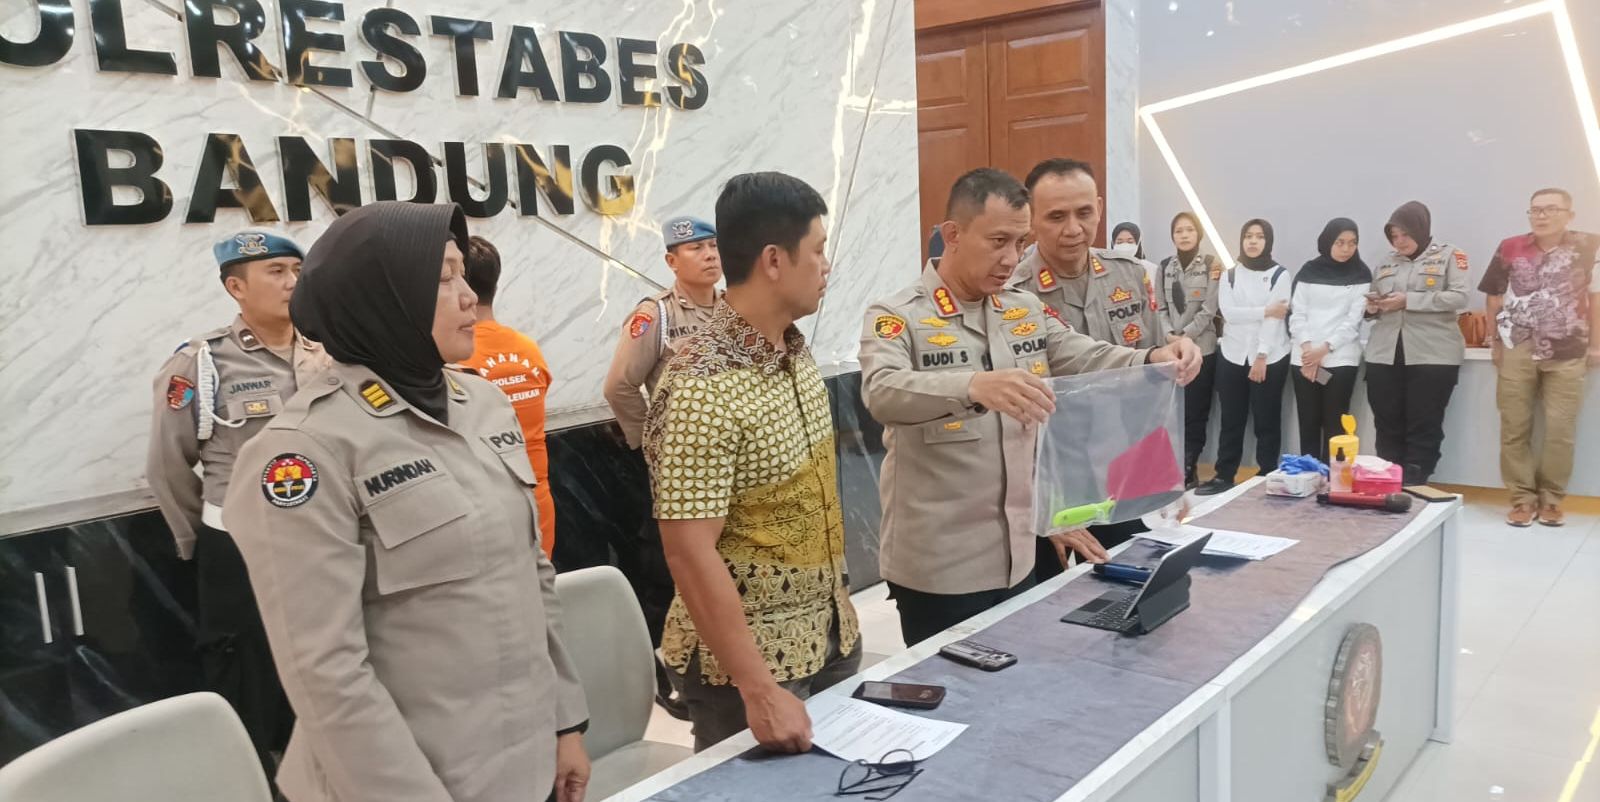 Kapolrestabes Bandung, Komisaris Besar Budi Sartono perlihatkan barang bukti pisau yang digunakan pelaku Yandri, untuk mengancam pelanggannya di Mapolrestabes Bandung di Jalan Merdeka, Kota Bandung pada Jumat, 12 Mei 2023.